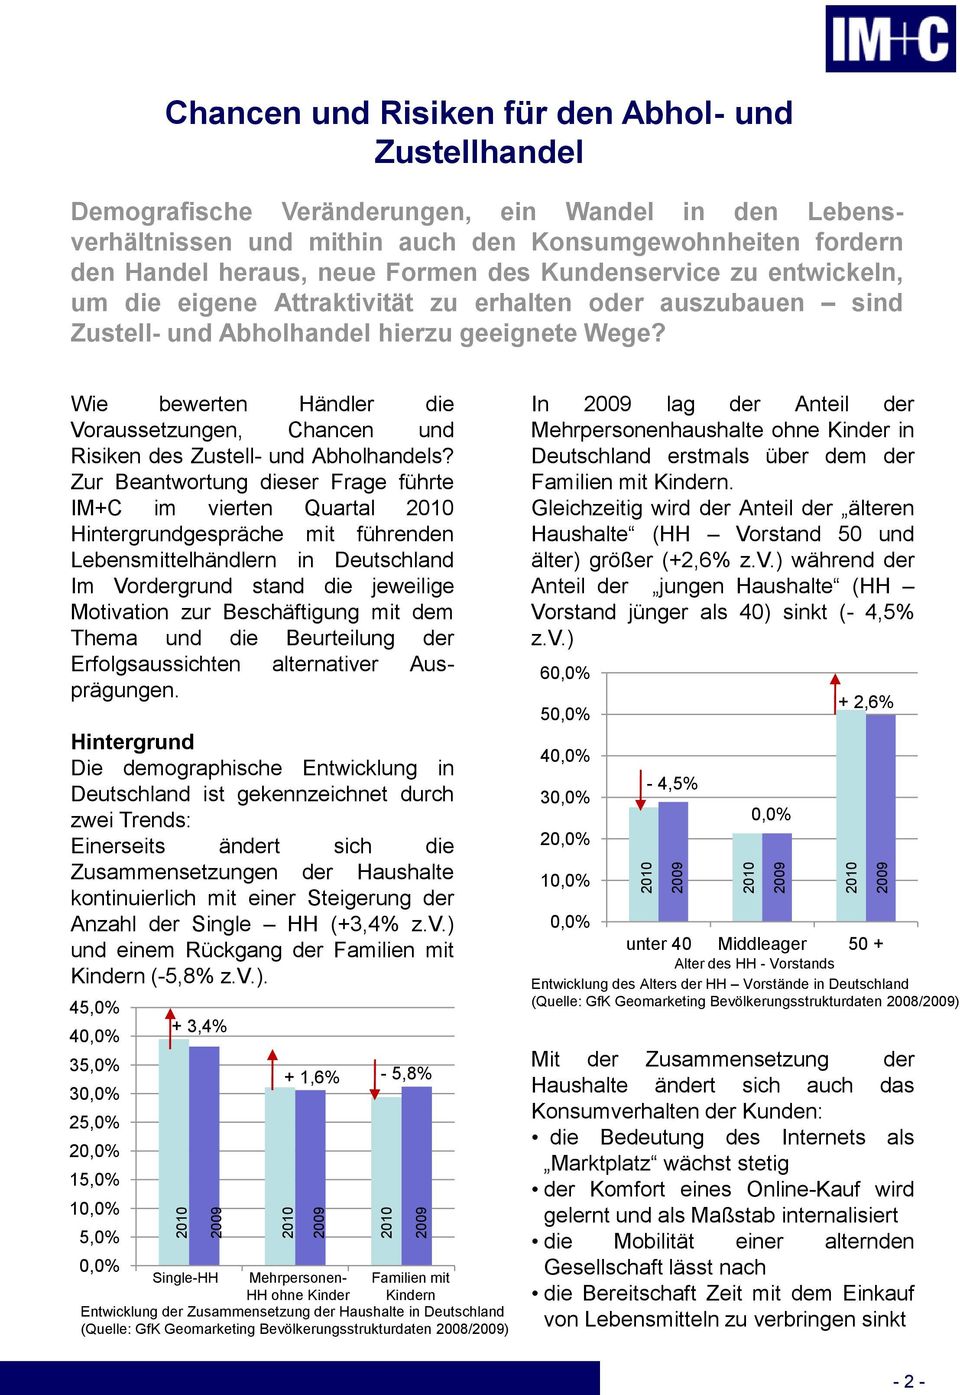 Hintergrund Die demographische Entwicklung in Deutschland ist gekennzeichnet durch zwei Trends: Einerseits ändert sich die Zusammensetzungen der Haushalte kontinuierlich mit einer Steigerung der